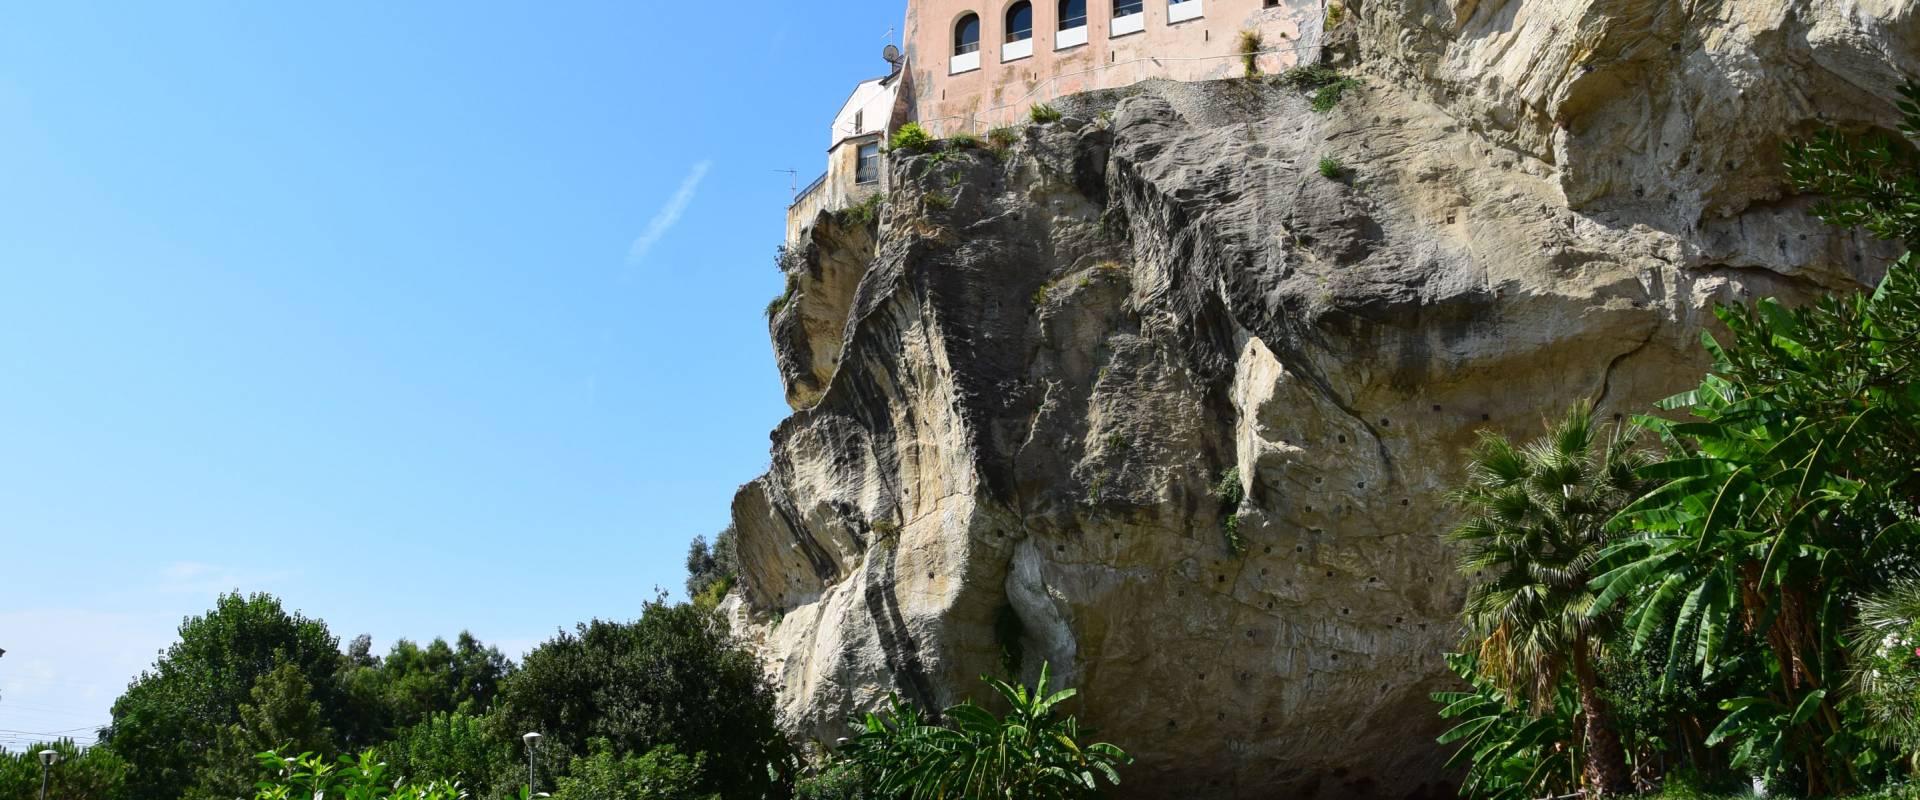 Parco della Grotta (C) foto di Vittorio martire